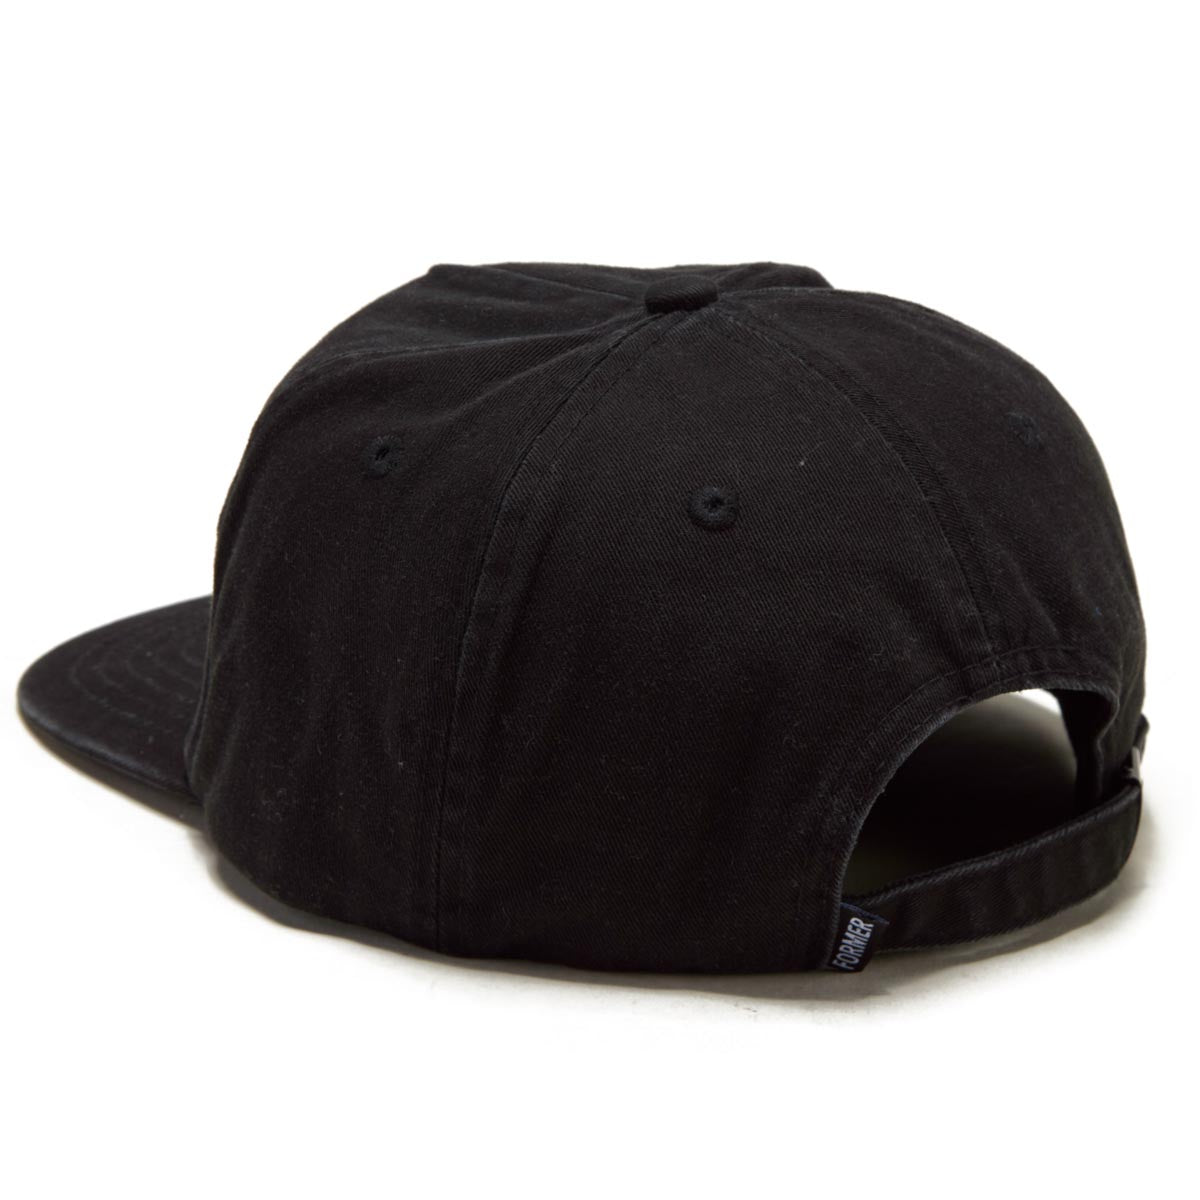 Former Heritage Hat - Black image 2